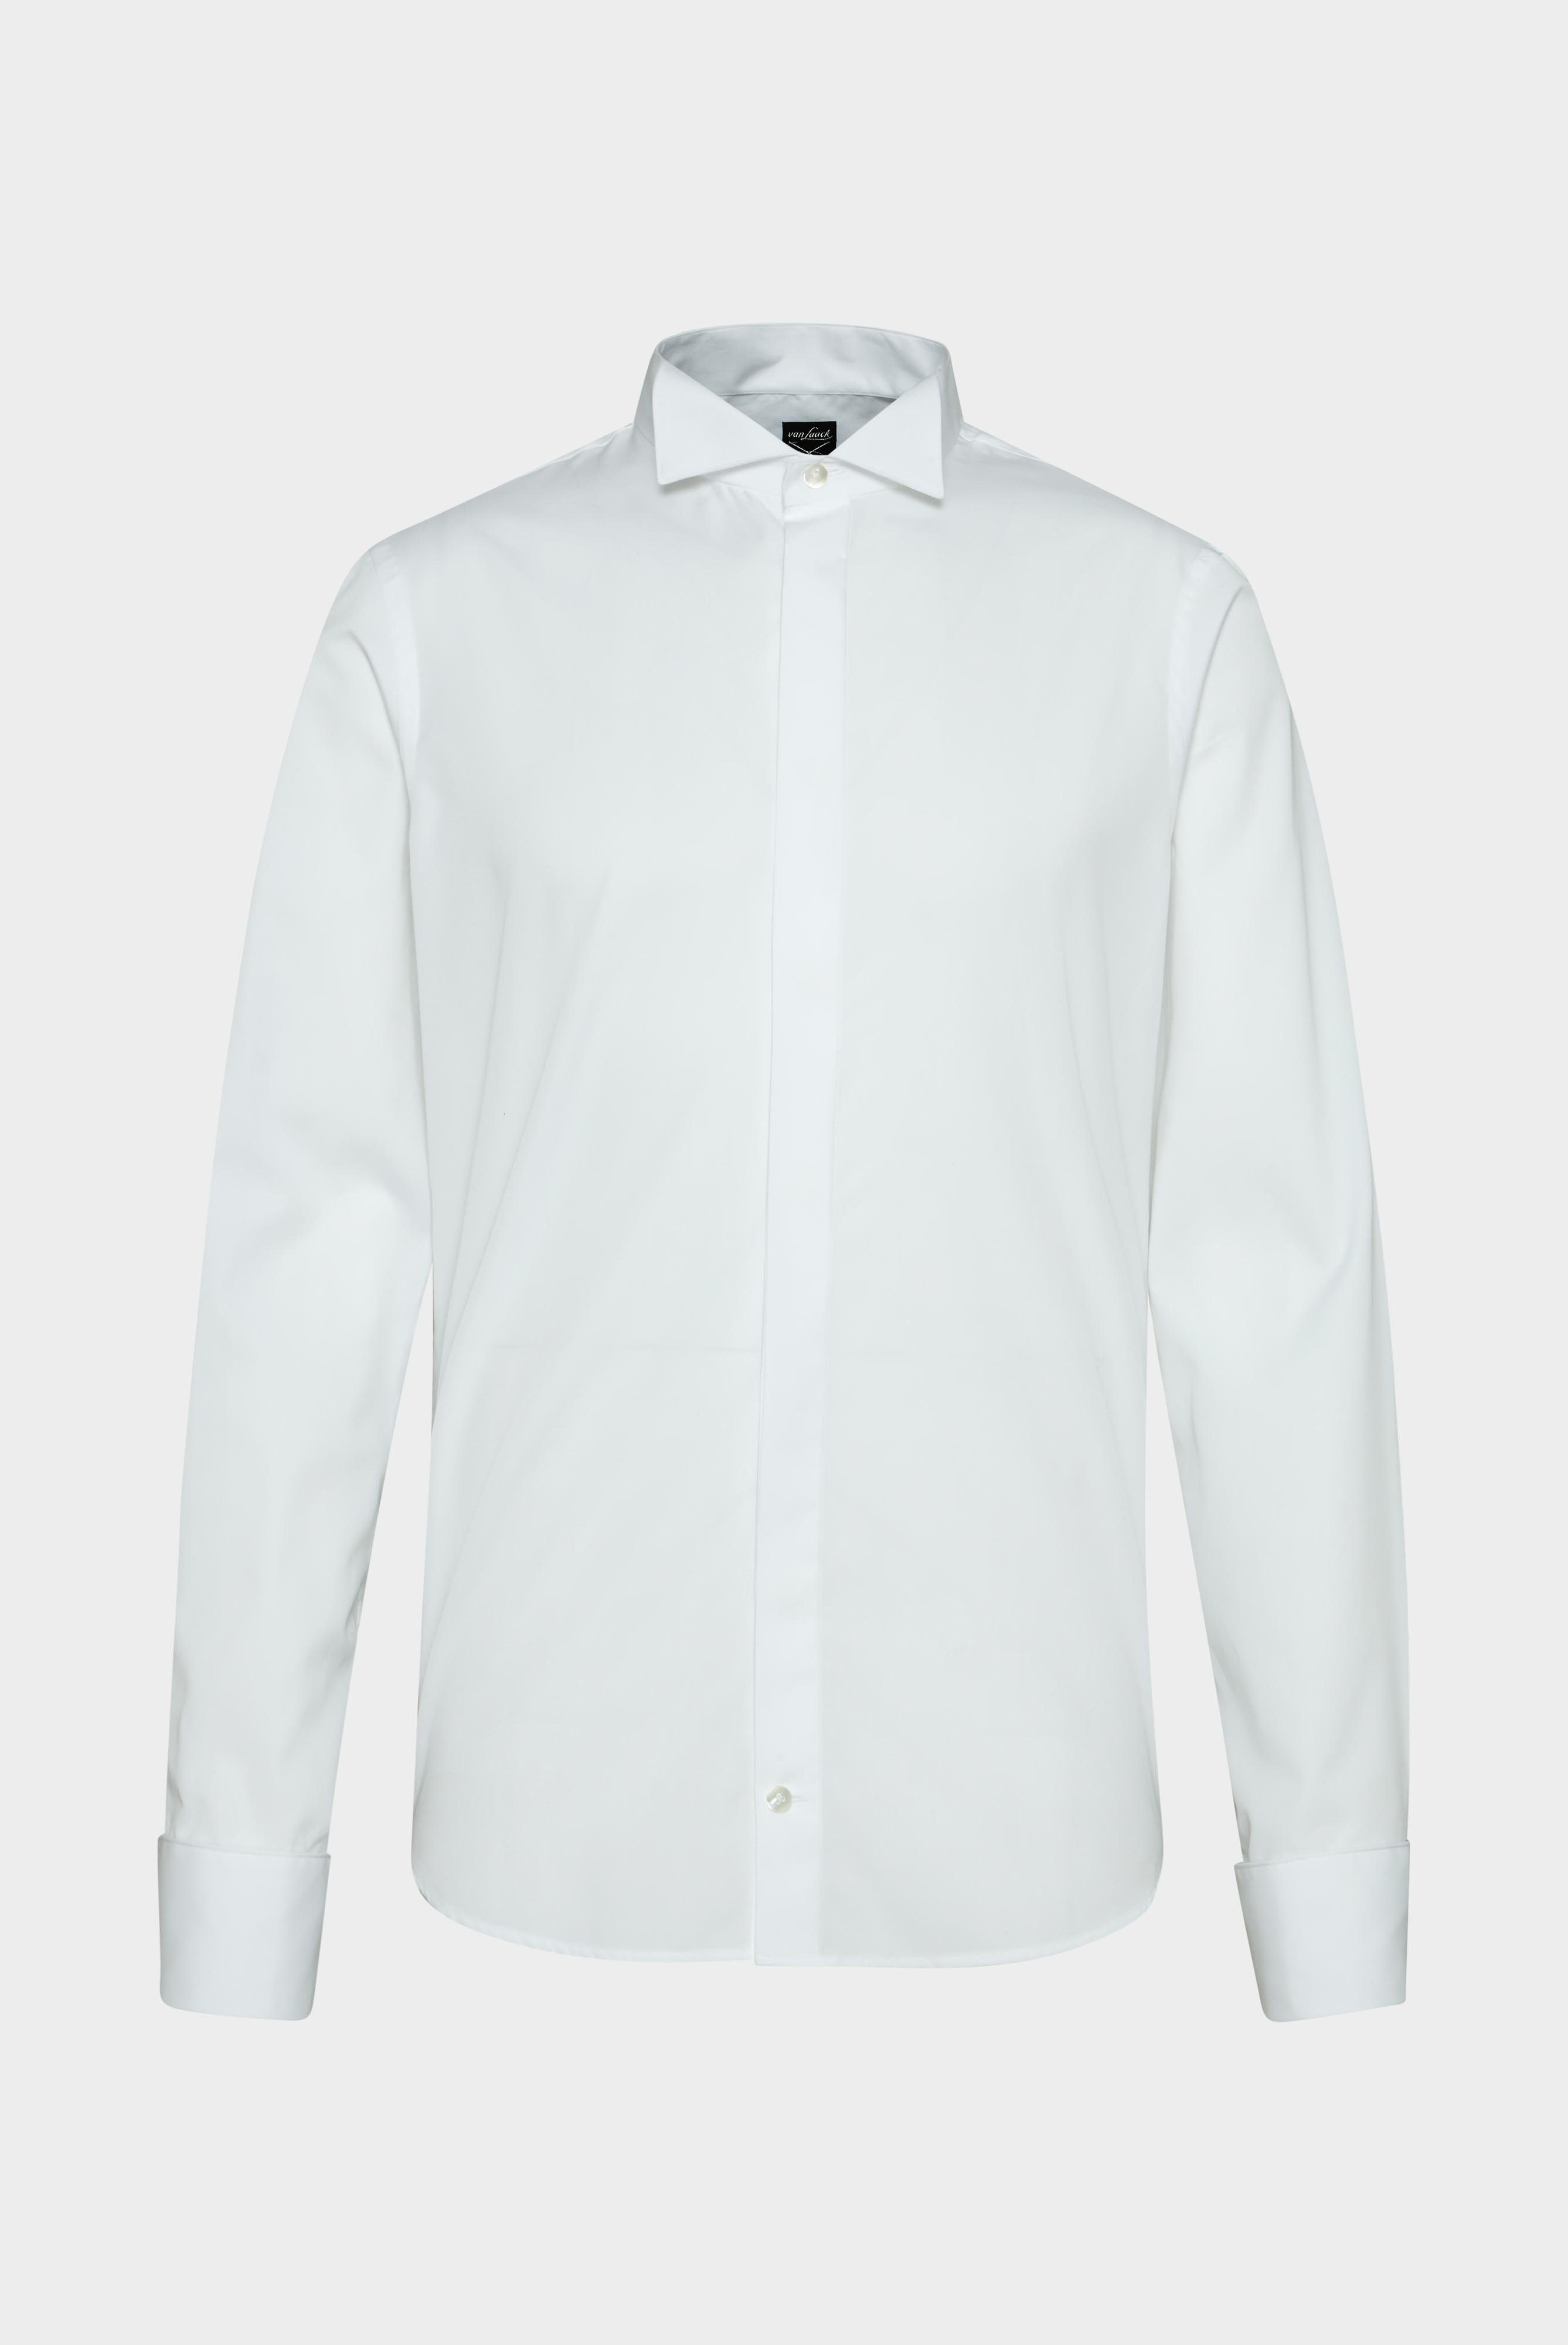 Festliche Hemden+Smokinghemd mit Kläppchenkragen Slim Fit+20.2061.NV.130648.000.37